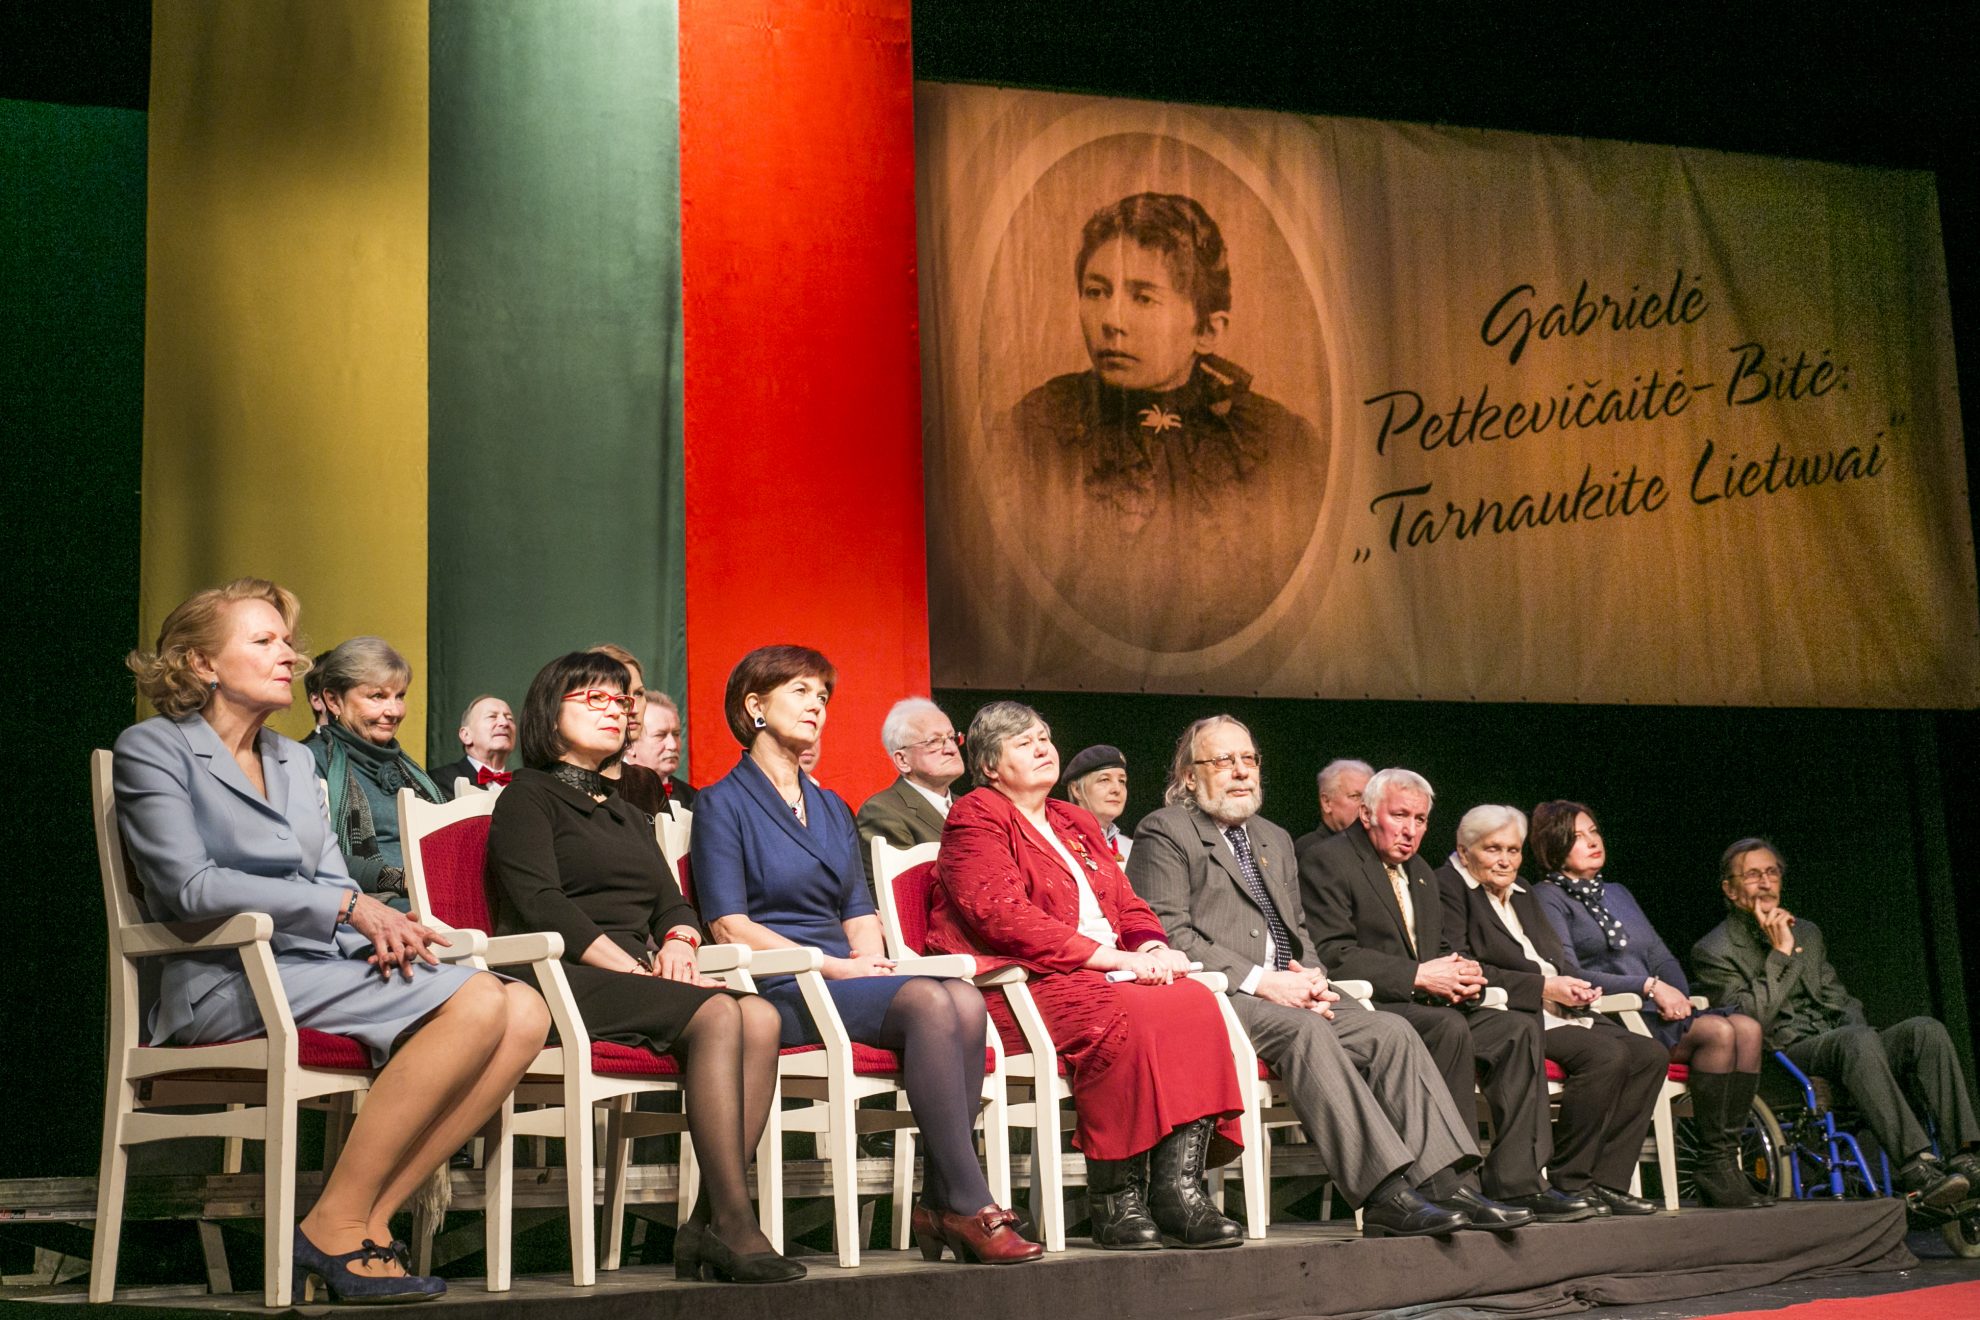 Juozo Miltinio dramos teatre apdovanoti rašytojos, publicistės, visuomenės veikėjos Gabrielės Petkevičaitės-Bitės atminimo medalio „Tarnaukite Lietuvai“ laureatai. Tarp jų – ir keturi panevėžiečiai.